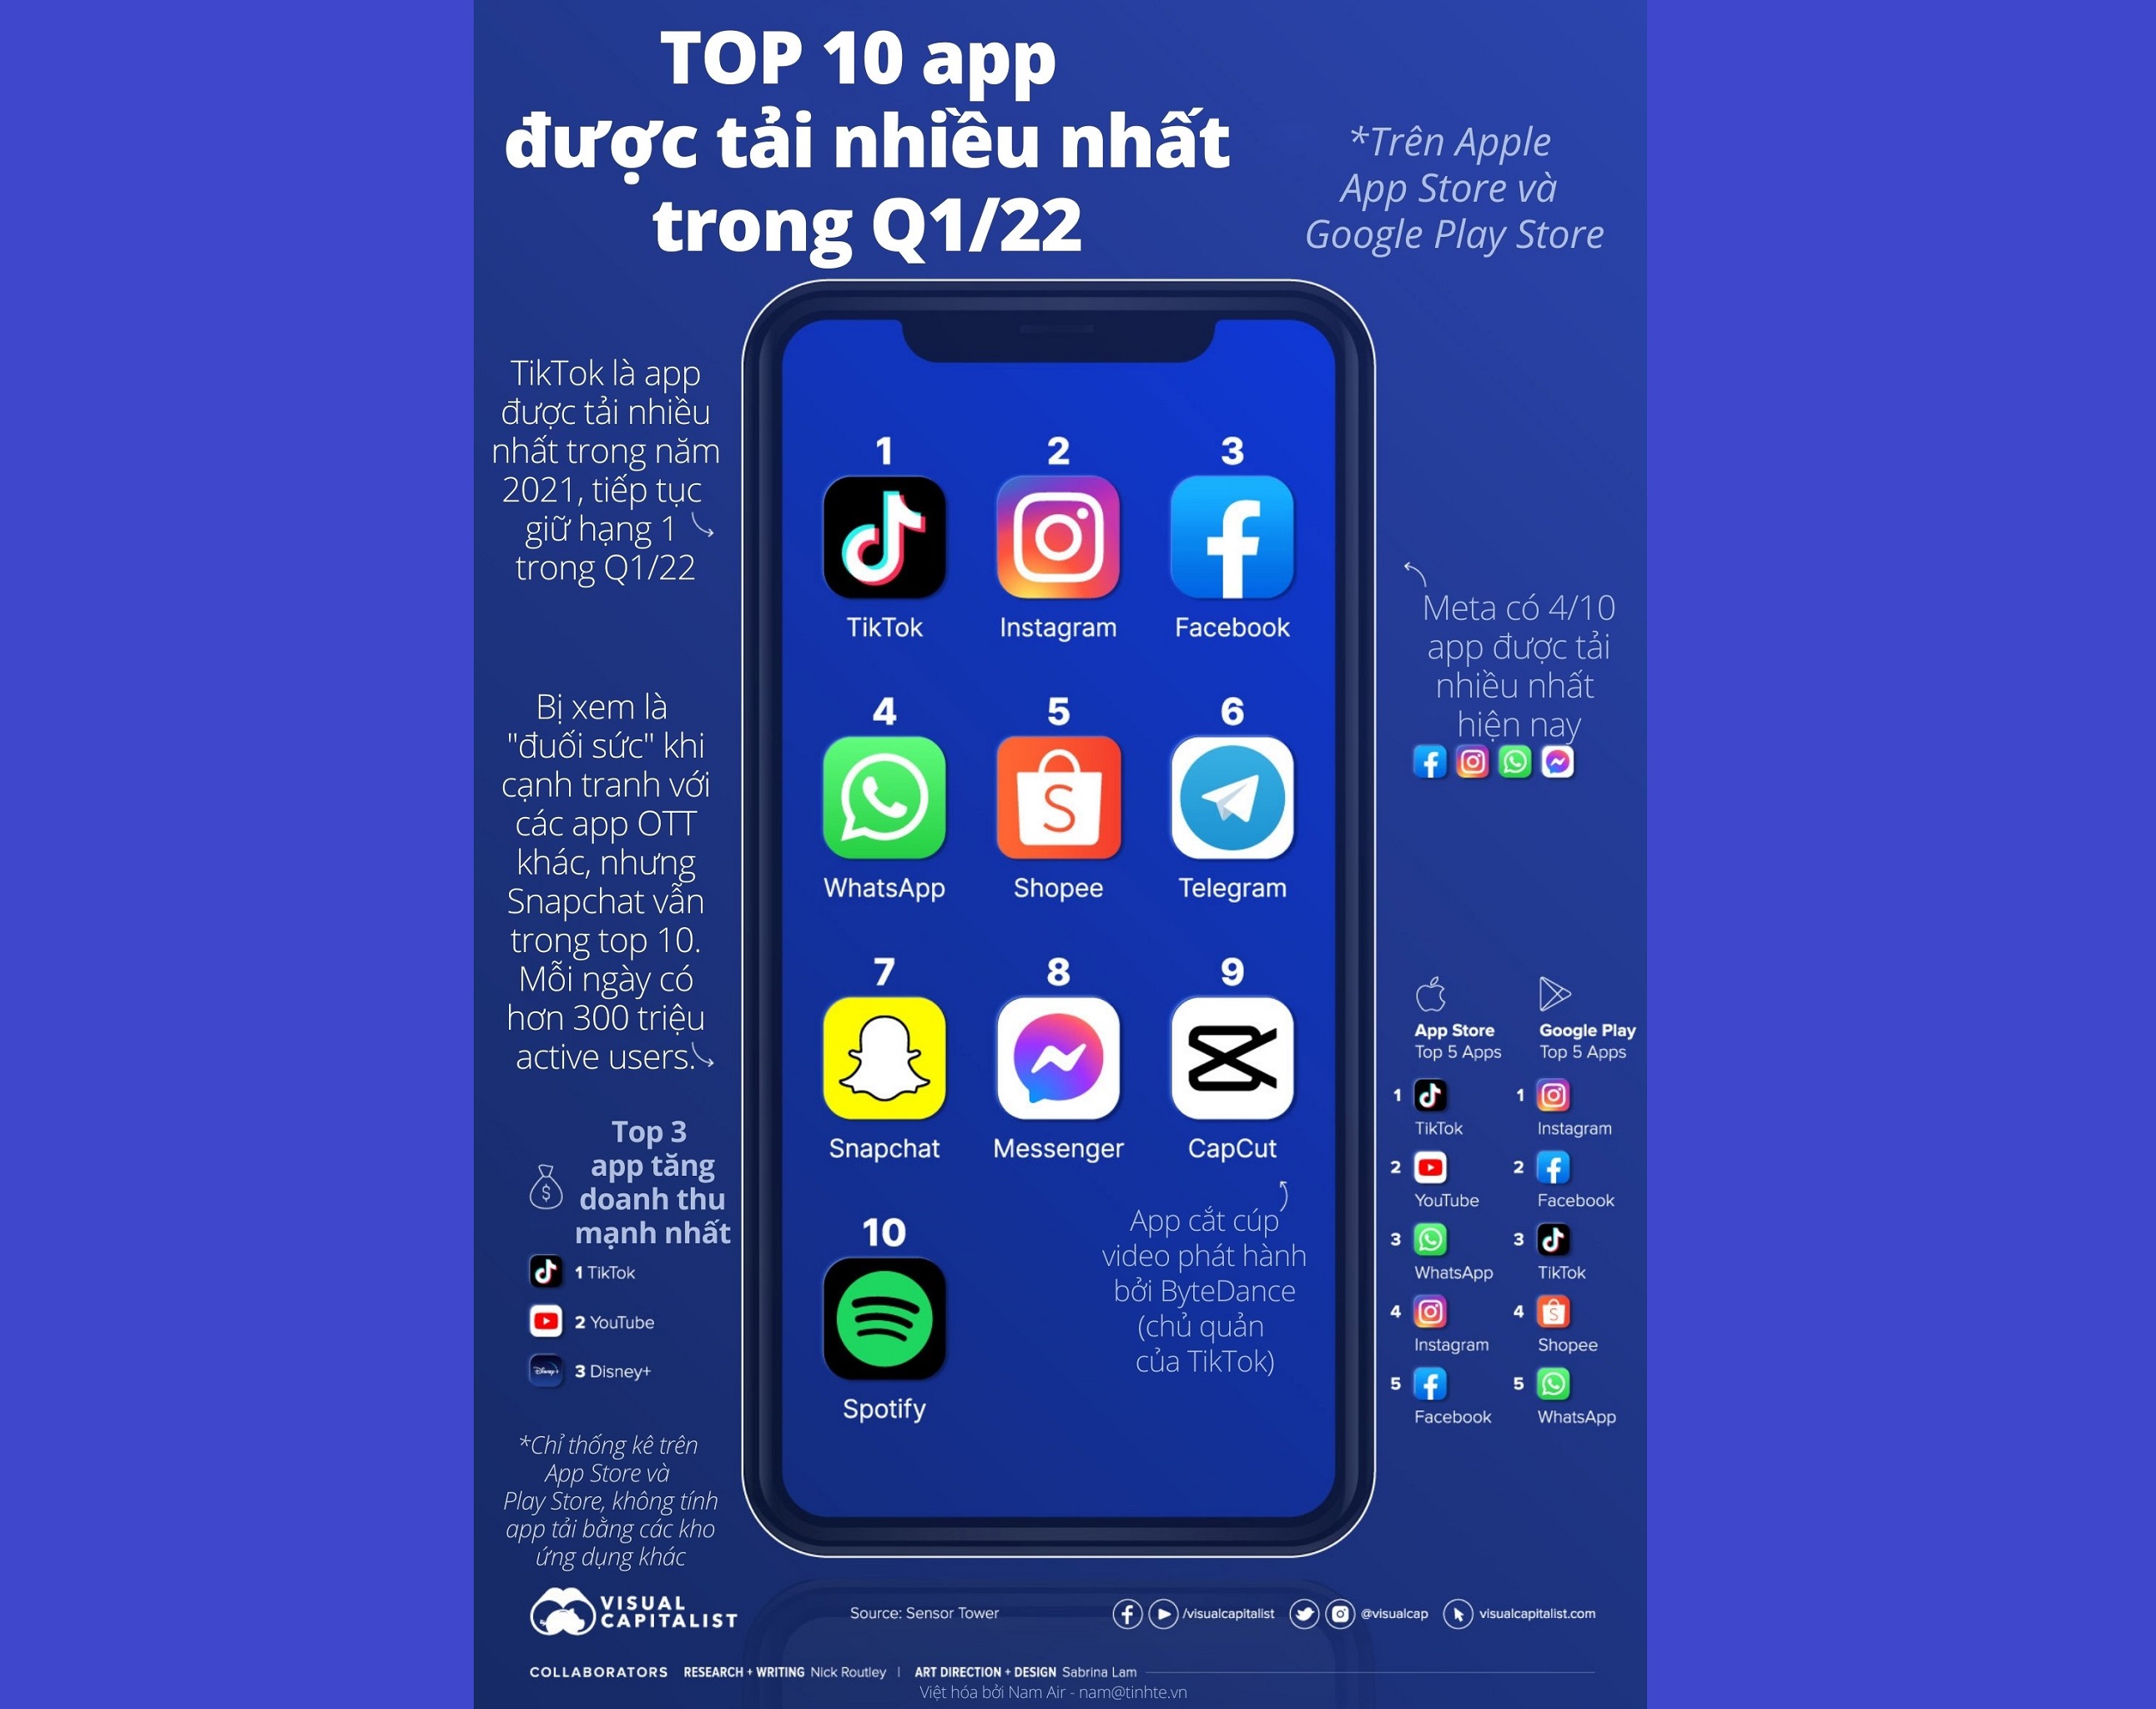 Infographic: Top 10 app được tải nhiều nhất Q1/22